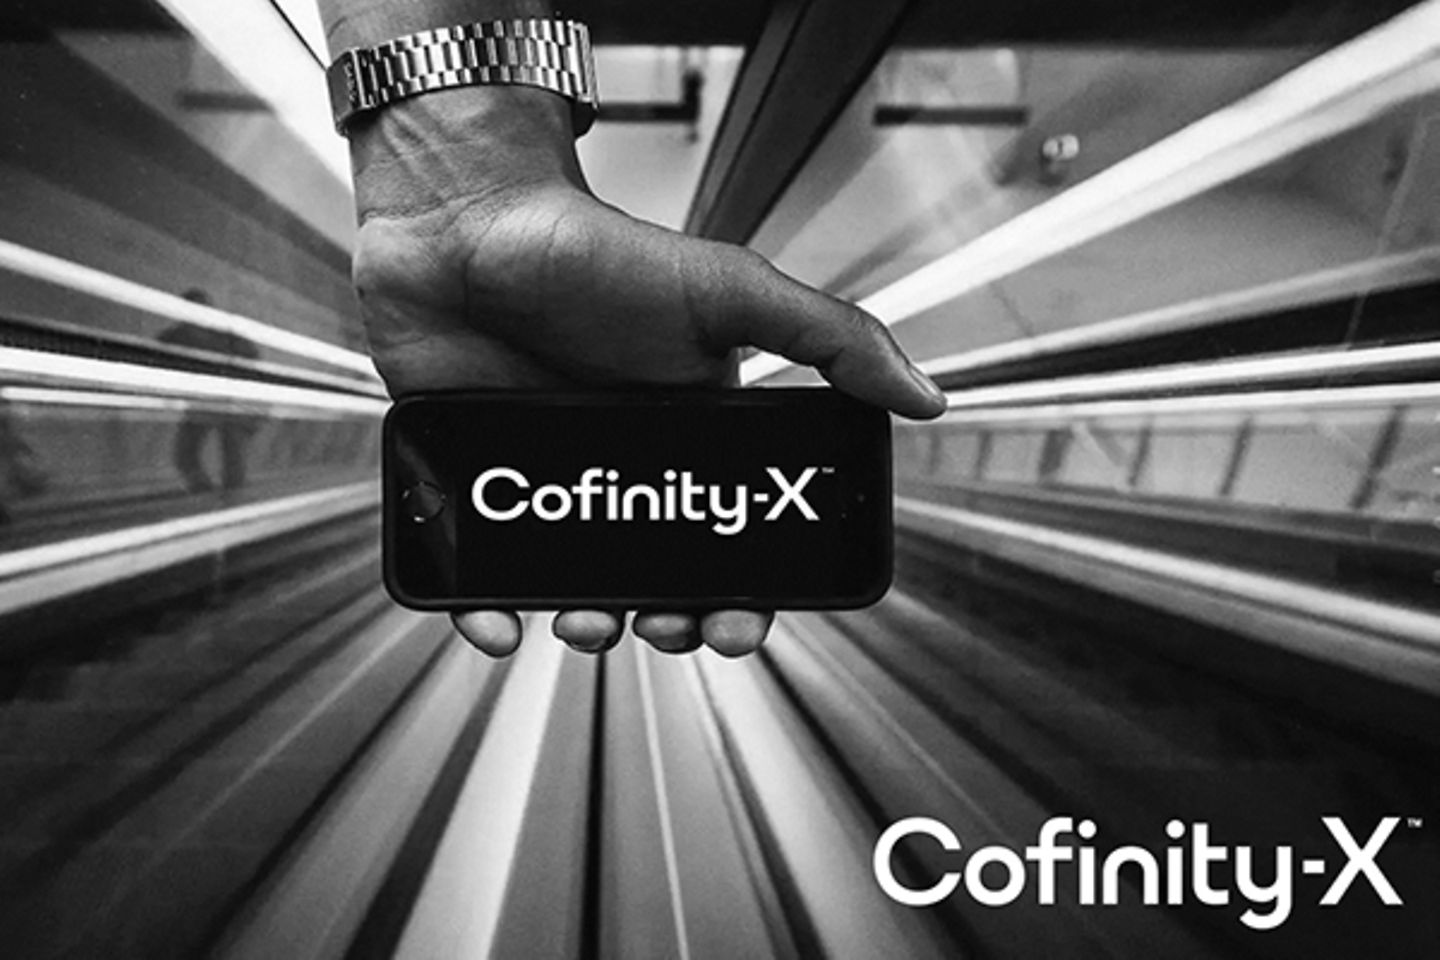 Eine Hand hält ein smartphone mit dem Confinity-X Logo